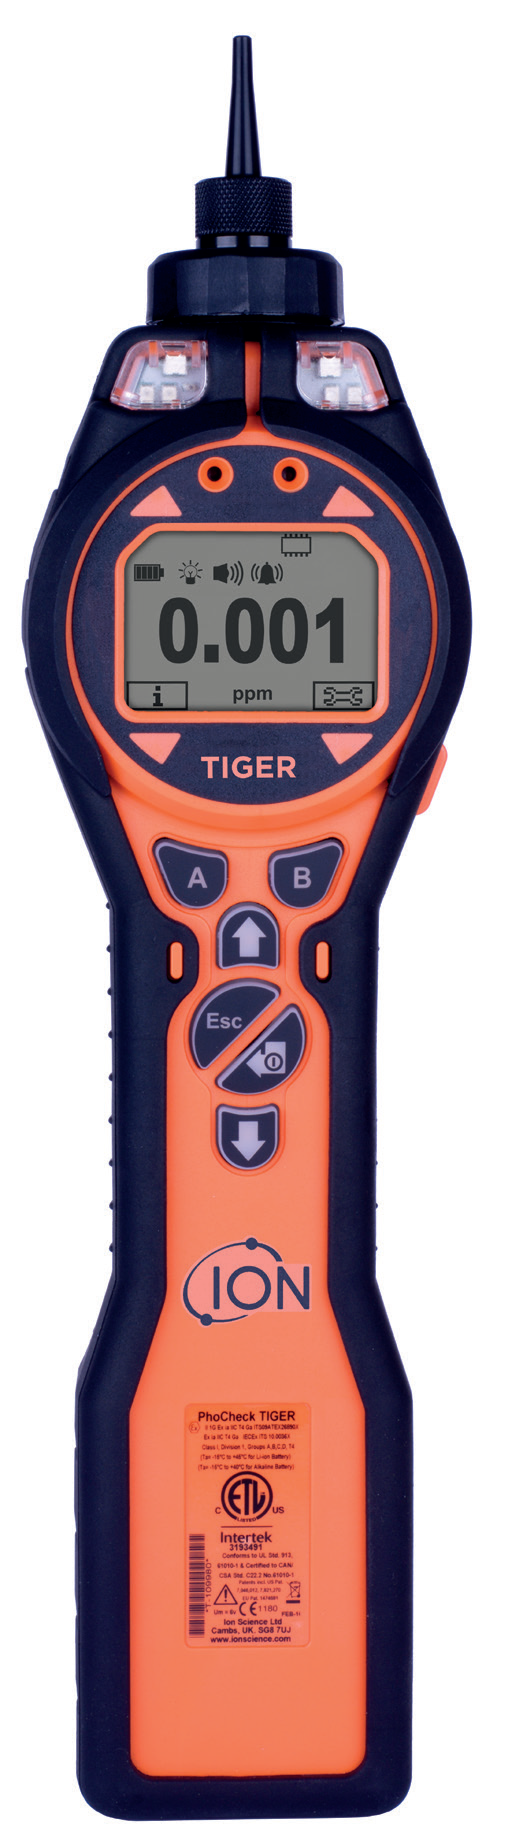 Tiger.png - 1.05 MB